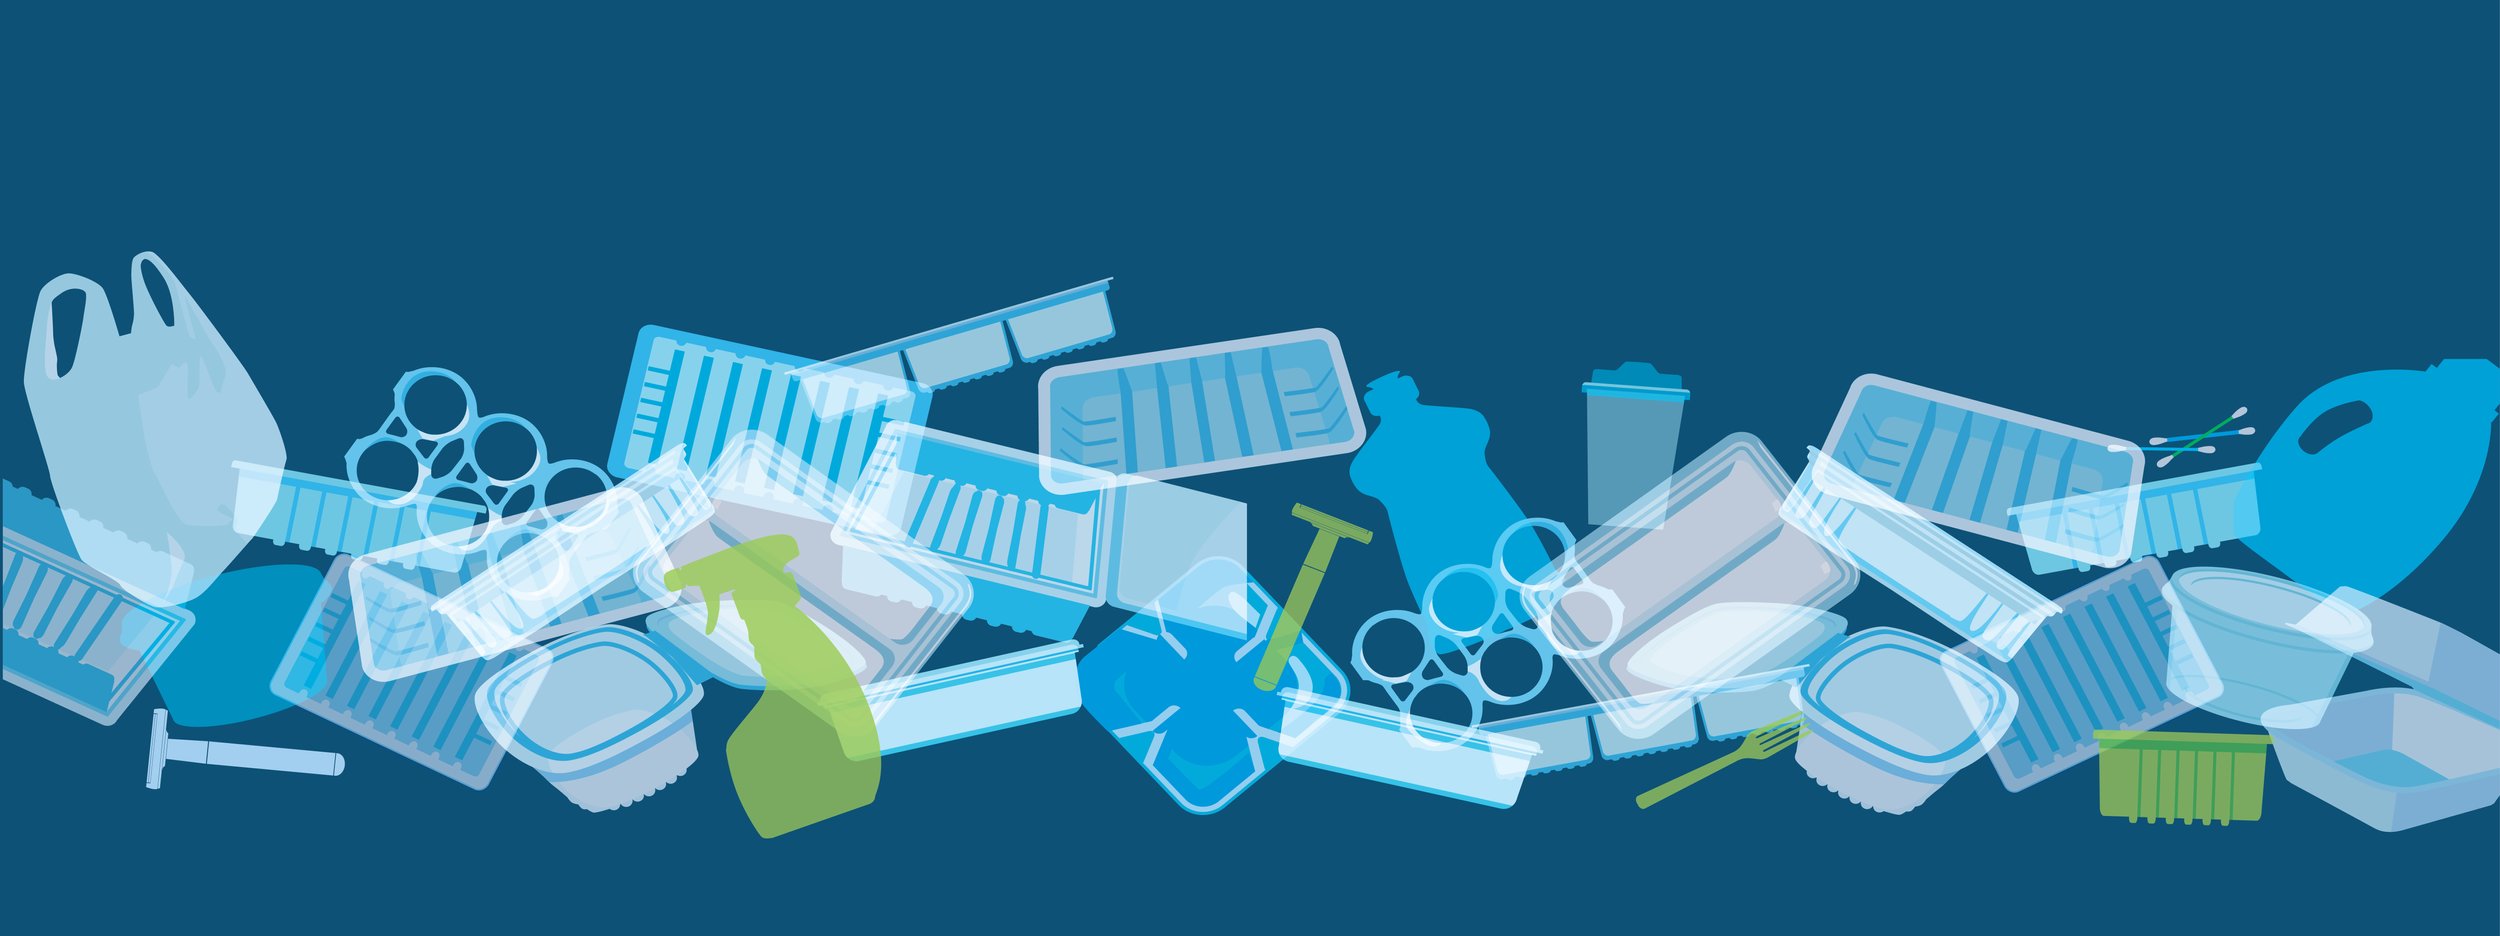 Graphic depicting plastic materials representing sustainability concerns